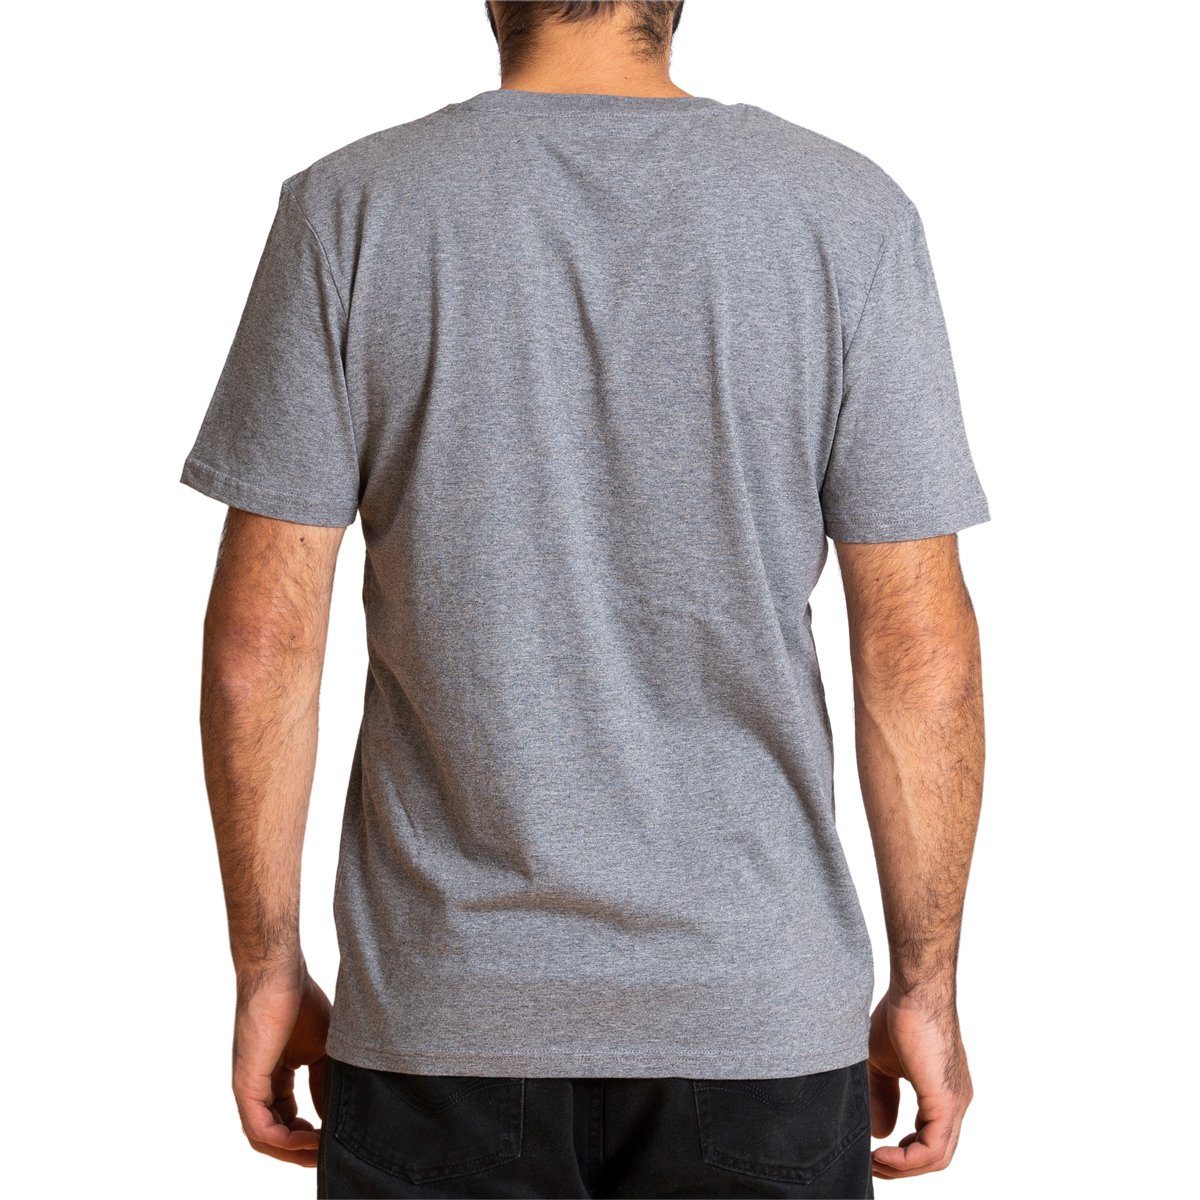 PANASIAM T-Shirt Herren Baumwolle fair aus T-Shirt Bio grau gehandelter "Basic"